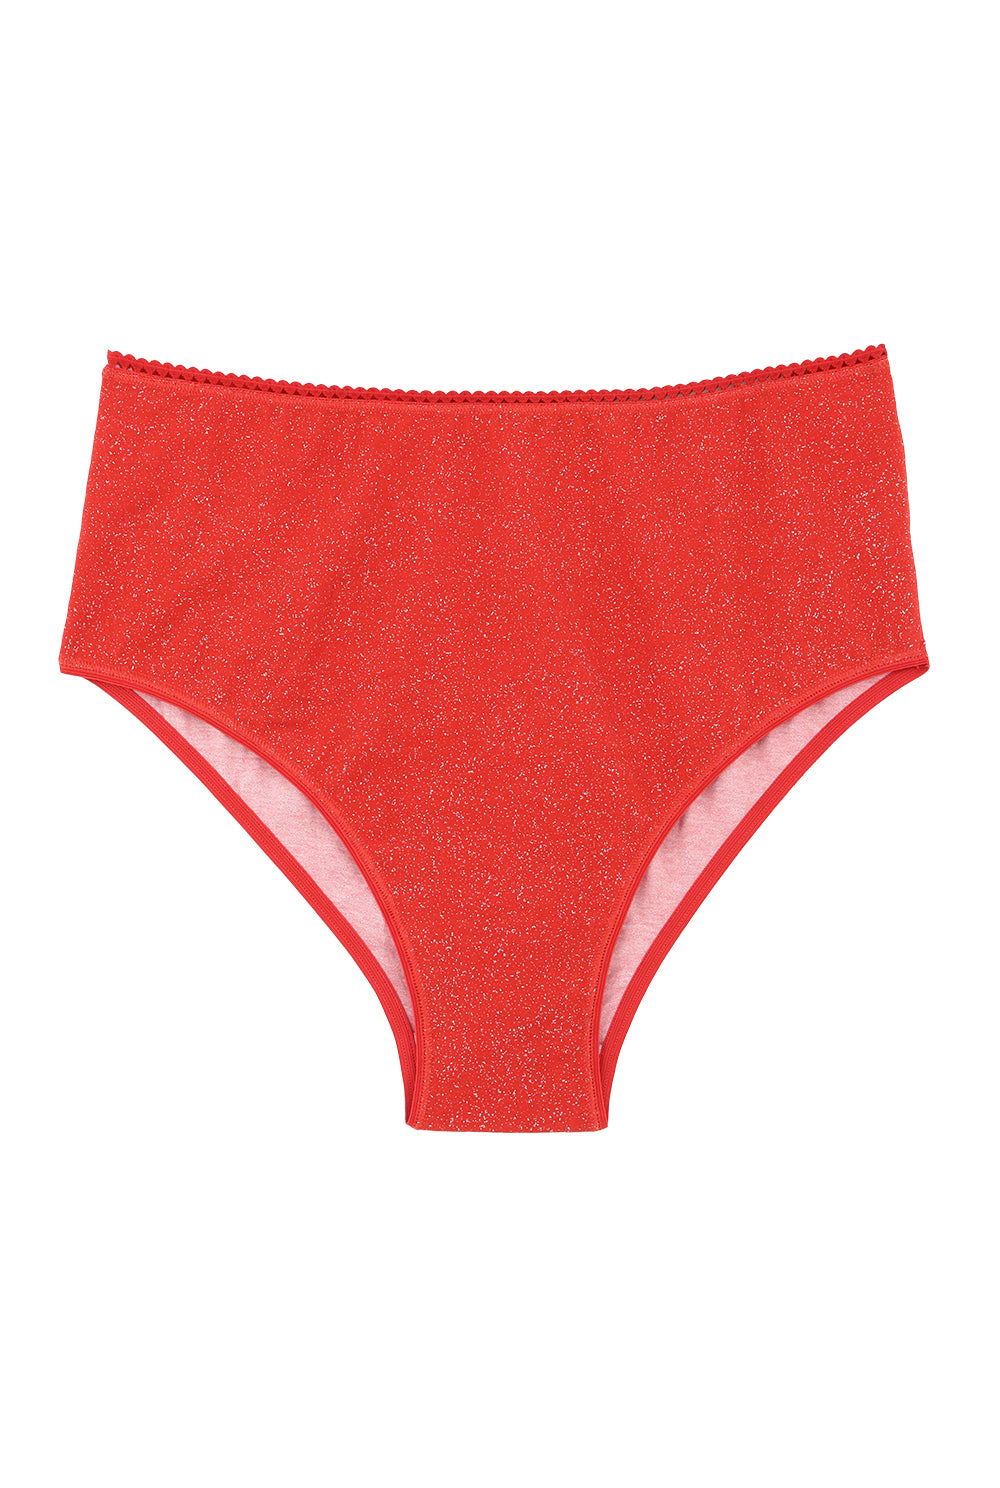 Culotte Taille Haute Coton BIO - Paillettes Rouge